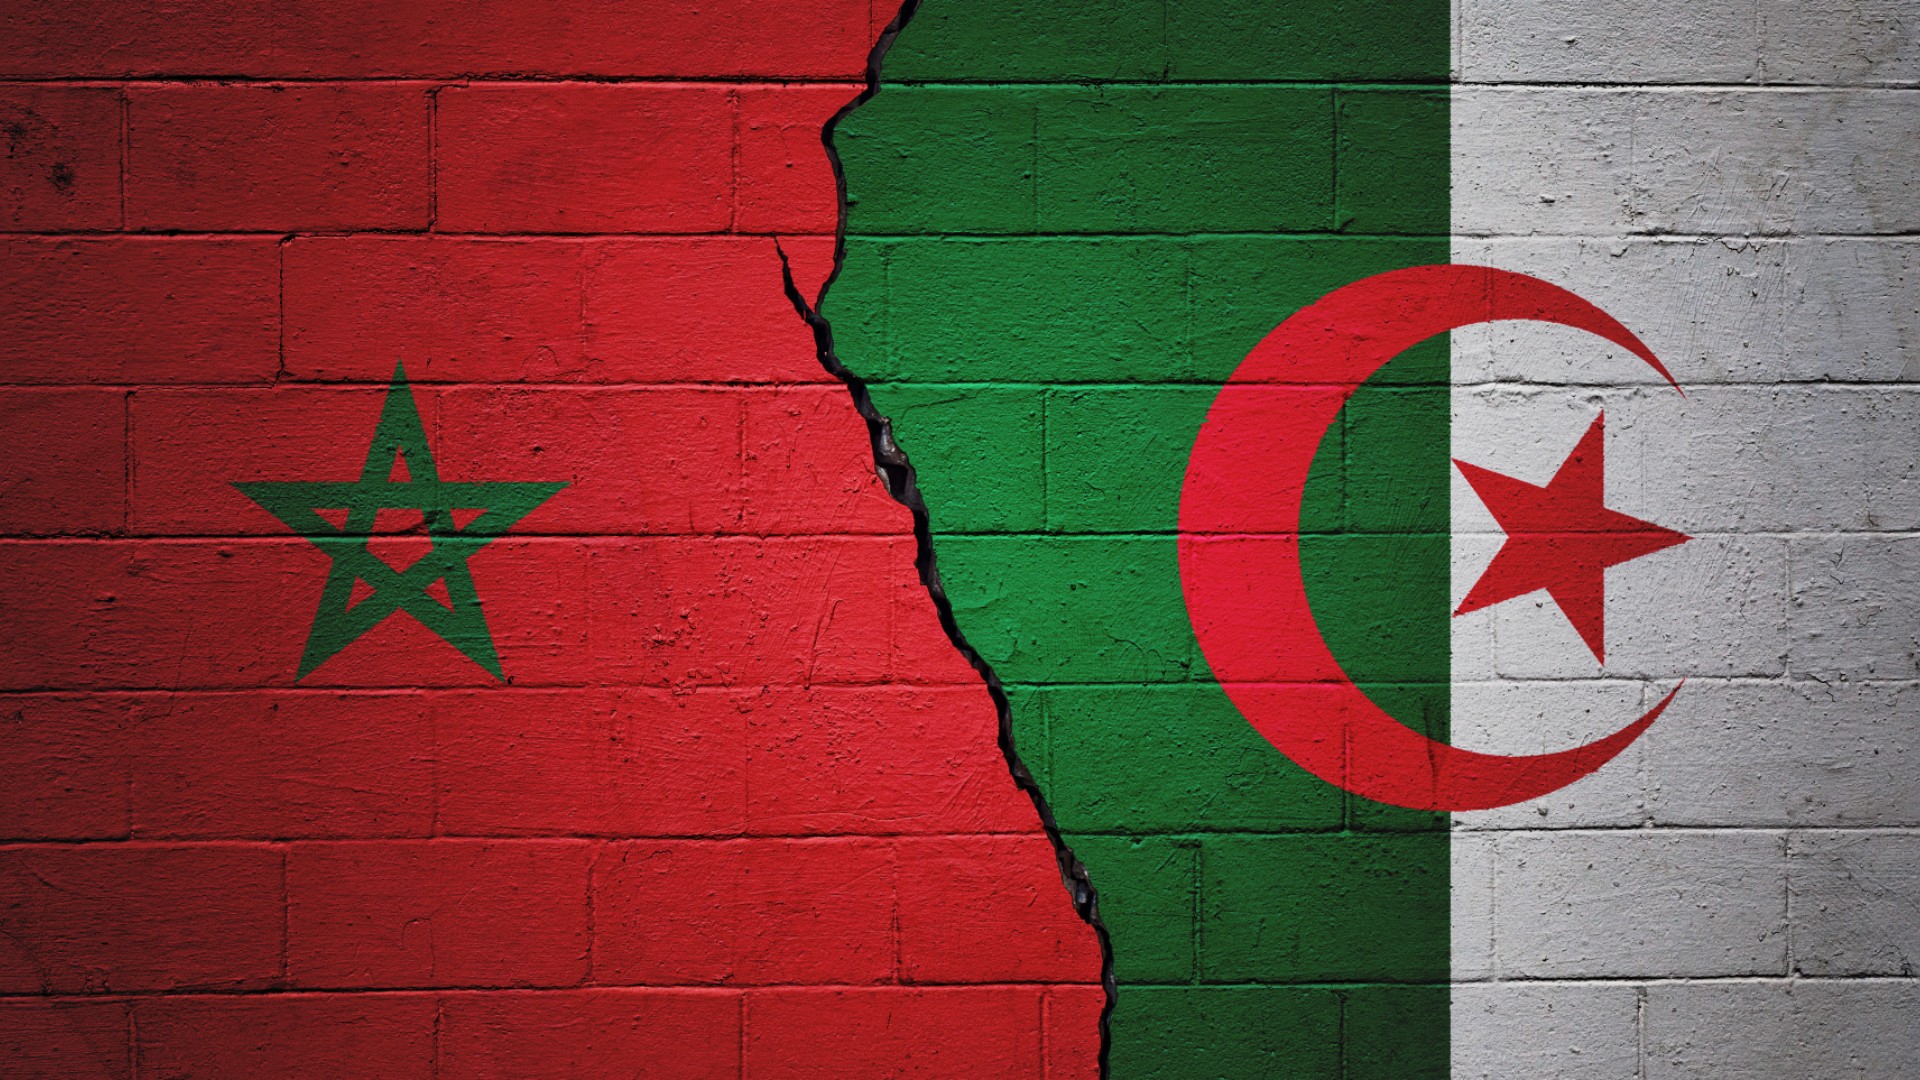 Ir al Video Las relaciones entre Argelia y Marruecos pasan por su peor momento después del asesinato de tres argelinos